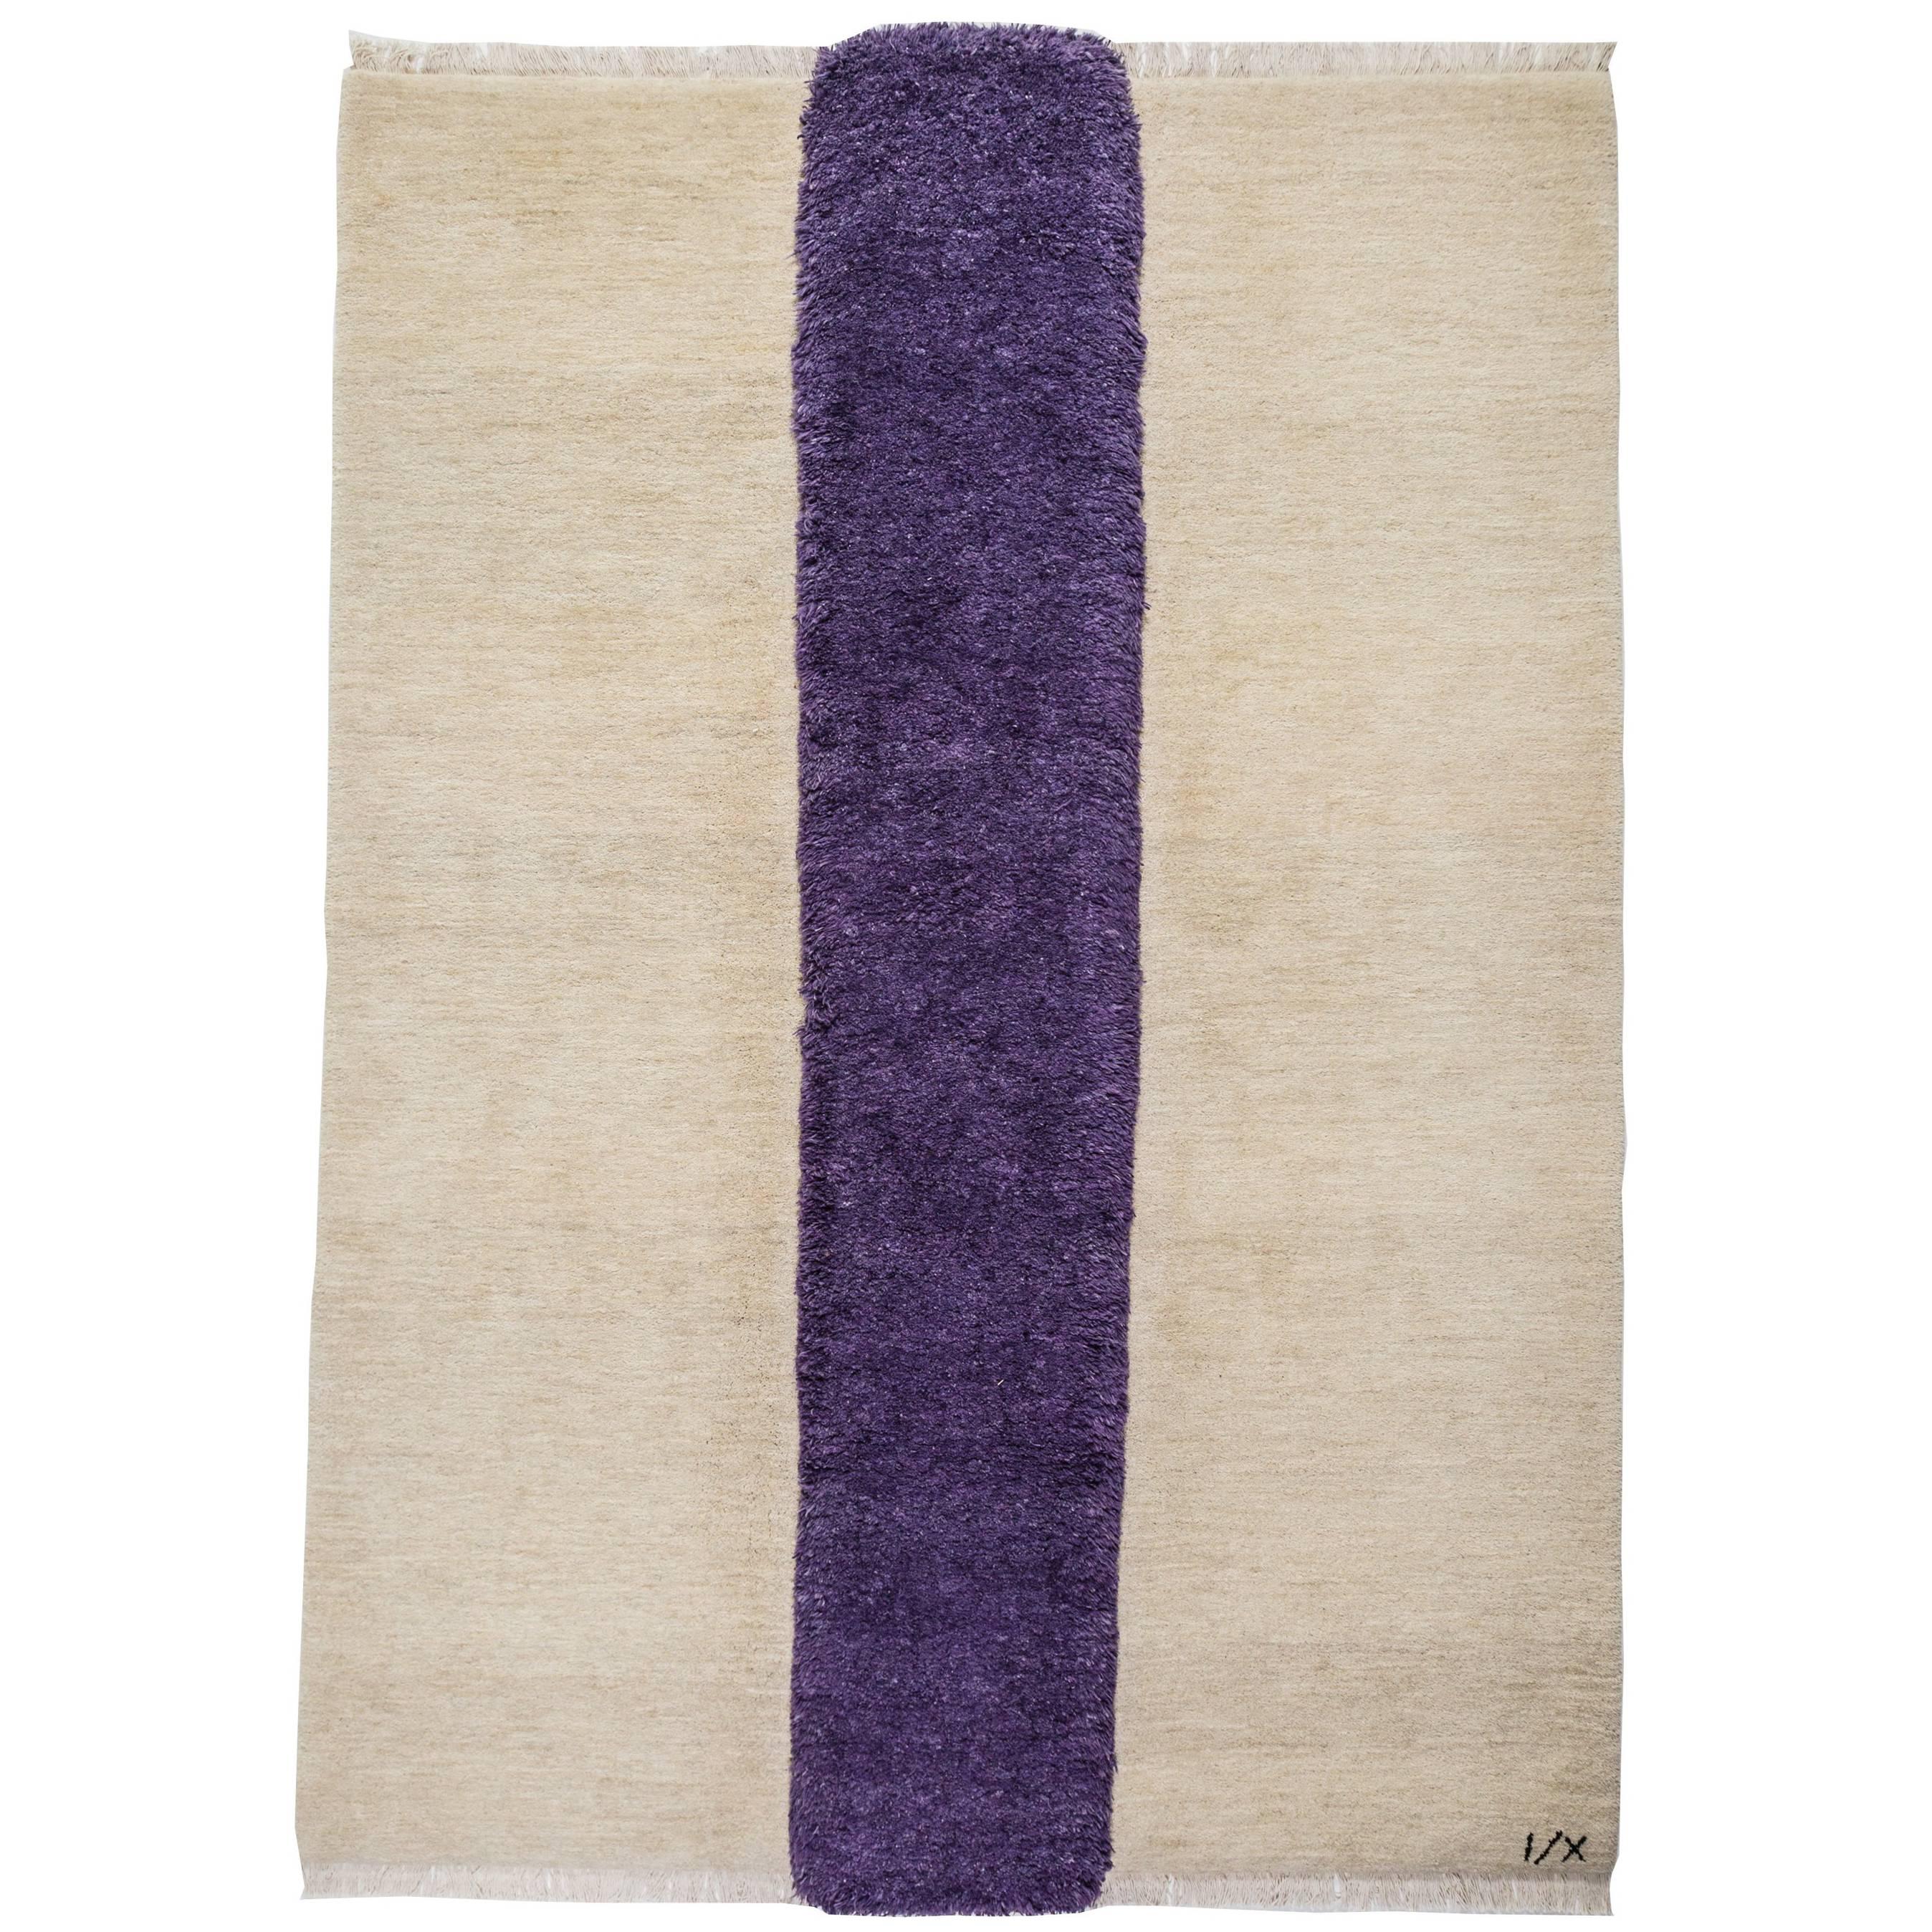 Rug - Modern Handknotted Cream Beige Afghan Wool w/ Purple Violet Rustic Carpet For Sale